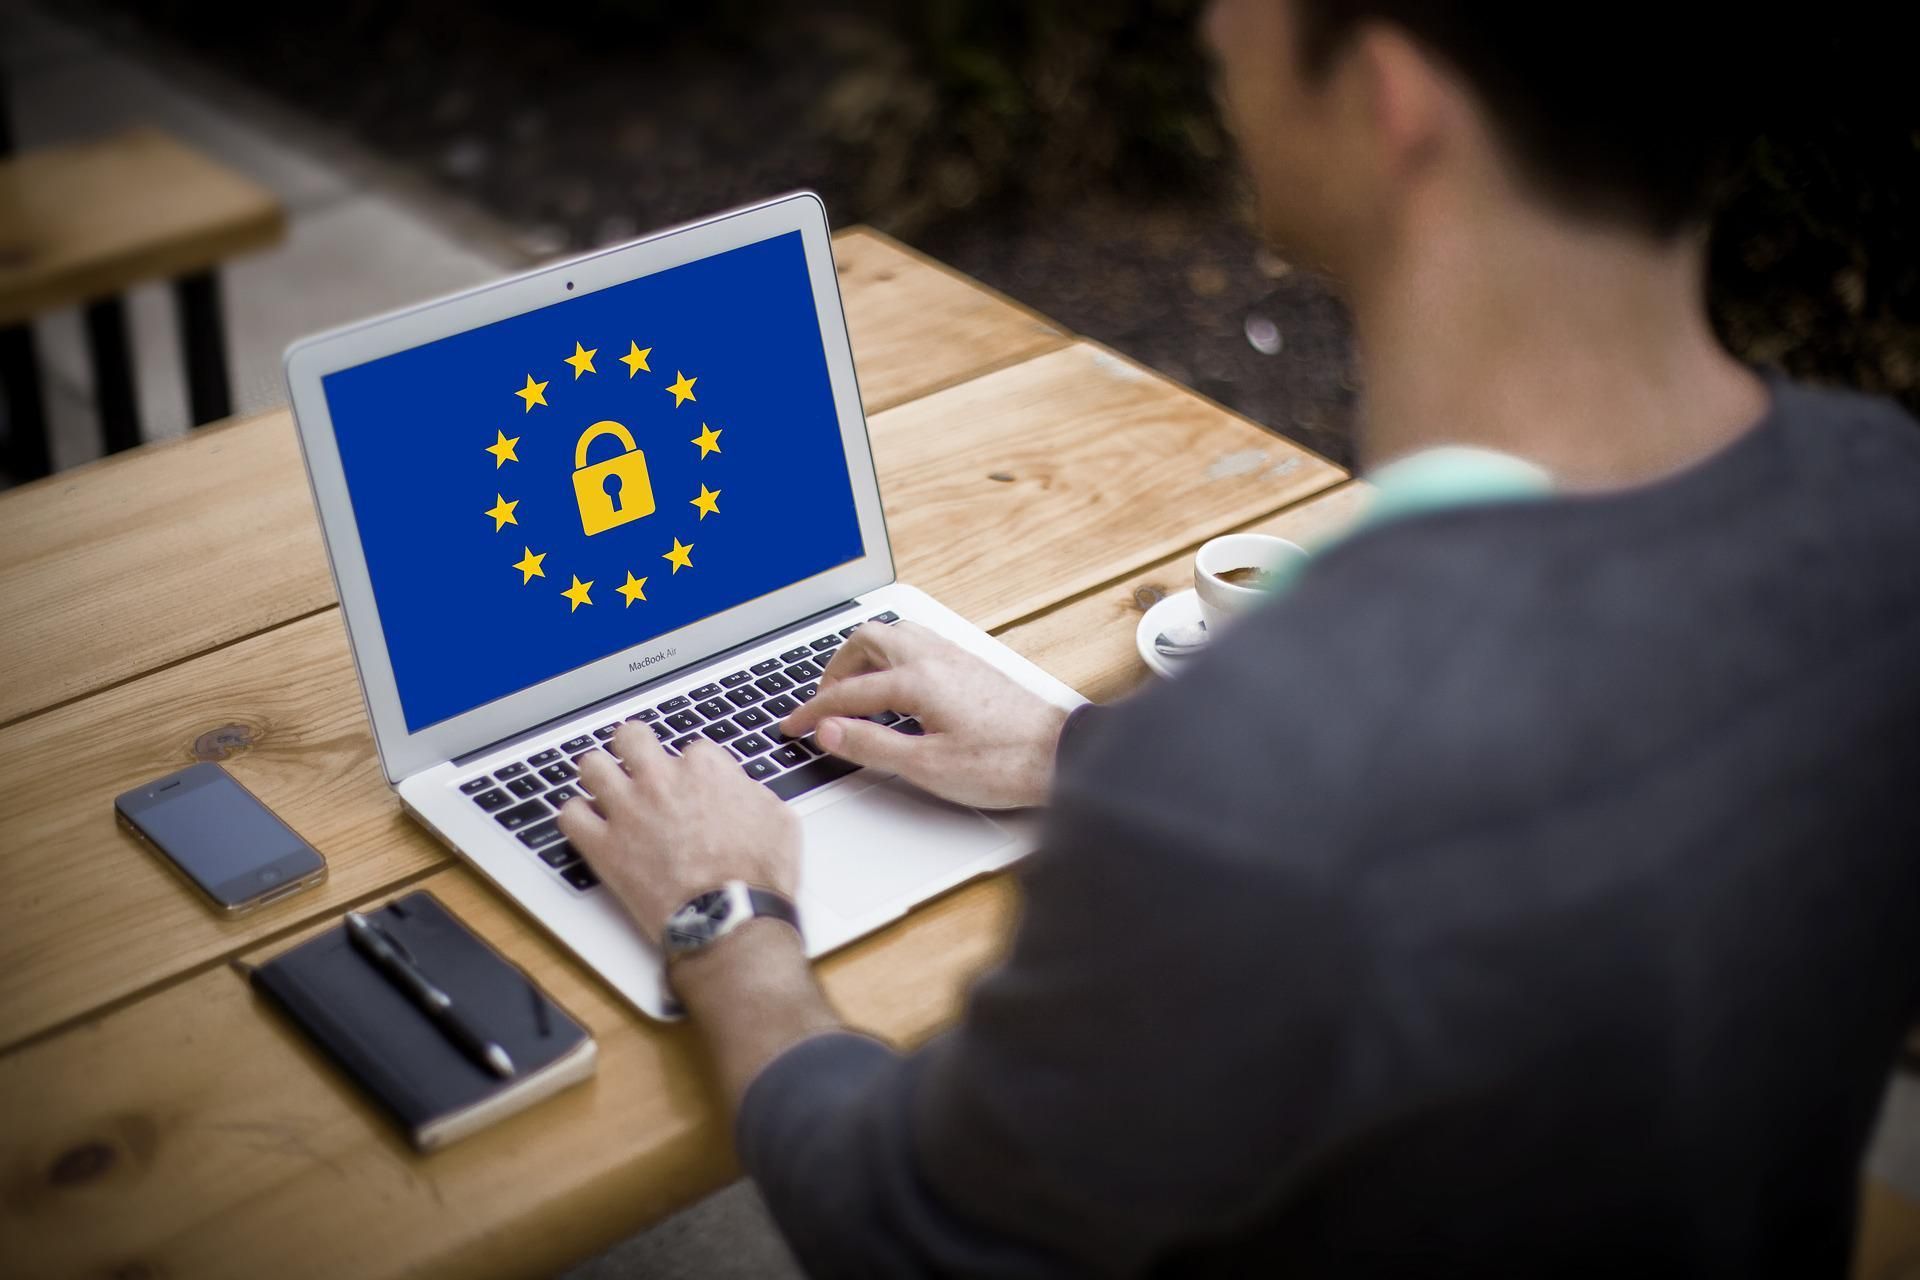 El Reglament General de Protecció de Dades (en anglès GDPR és l'acrònim General Data Protection Regulation), oficialment el Reglament (UE) número 2016/679, és un reglament de la Unió Europea pel que fa al tractament de dades personals i privadesa, adoptat el 27 d'abril de 2016.